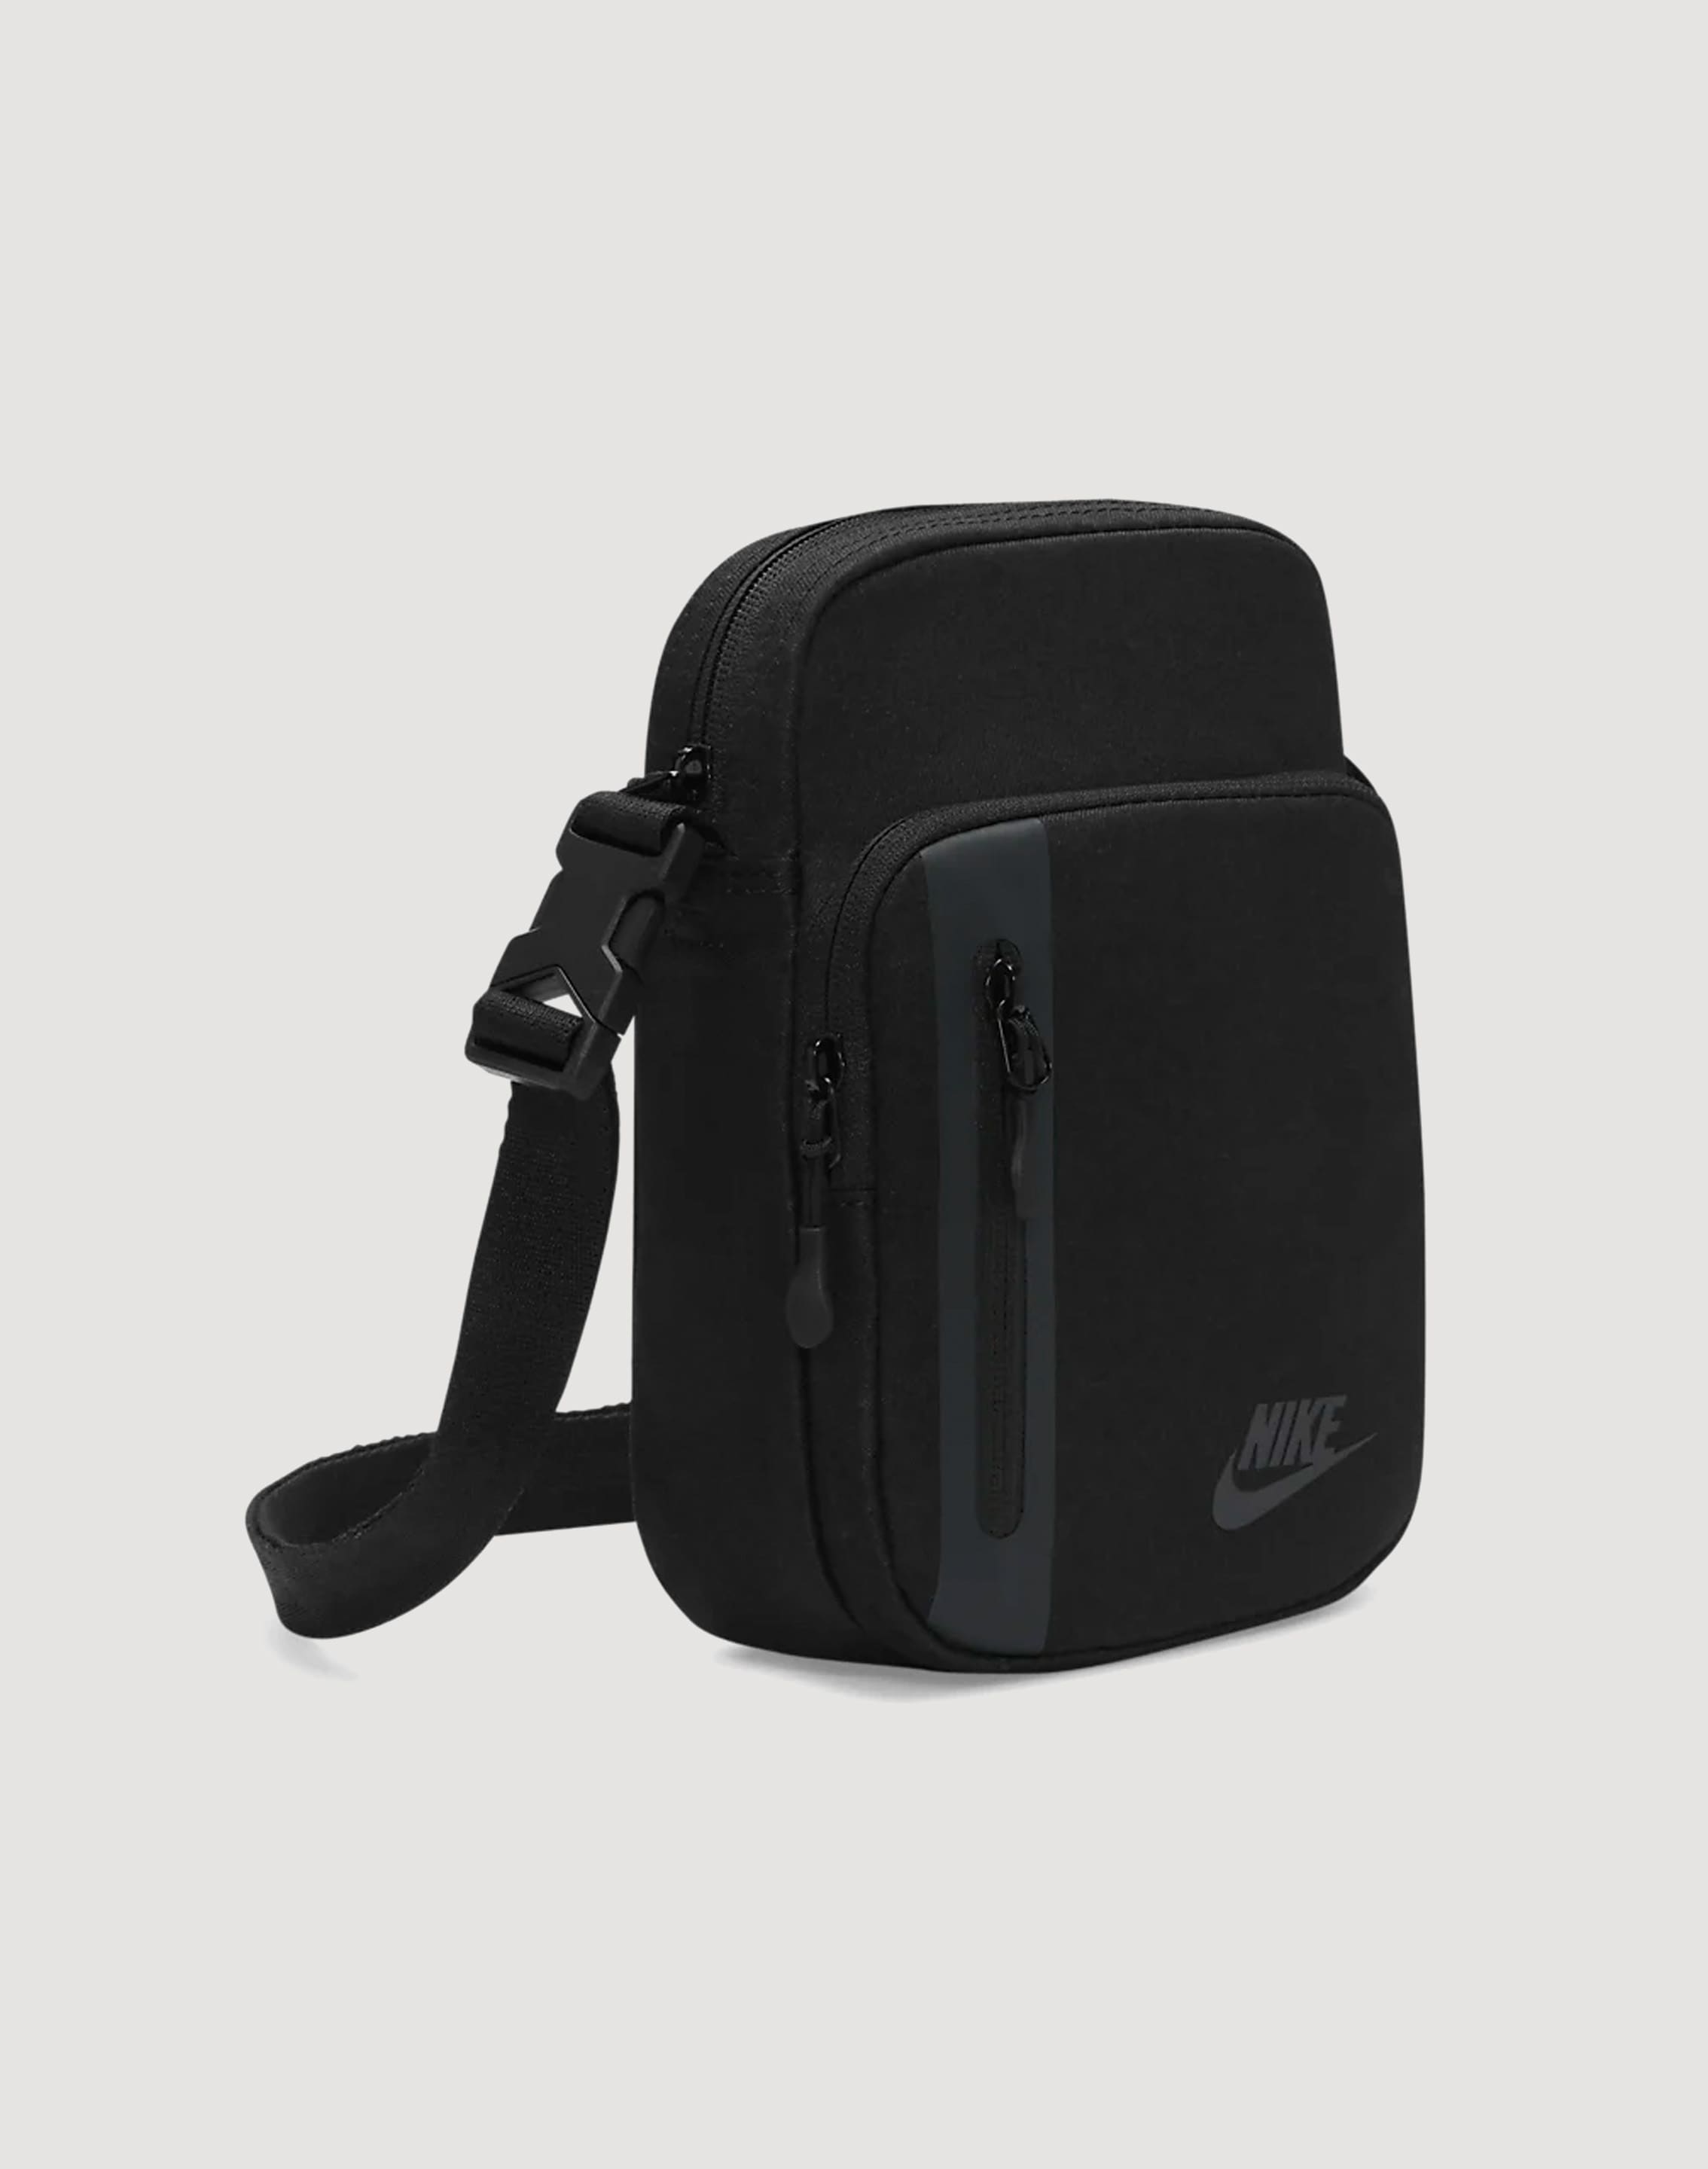 Nike Unisex Messenger Shoulder Bag *3 COLORS* NWT | eBay